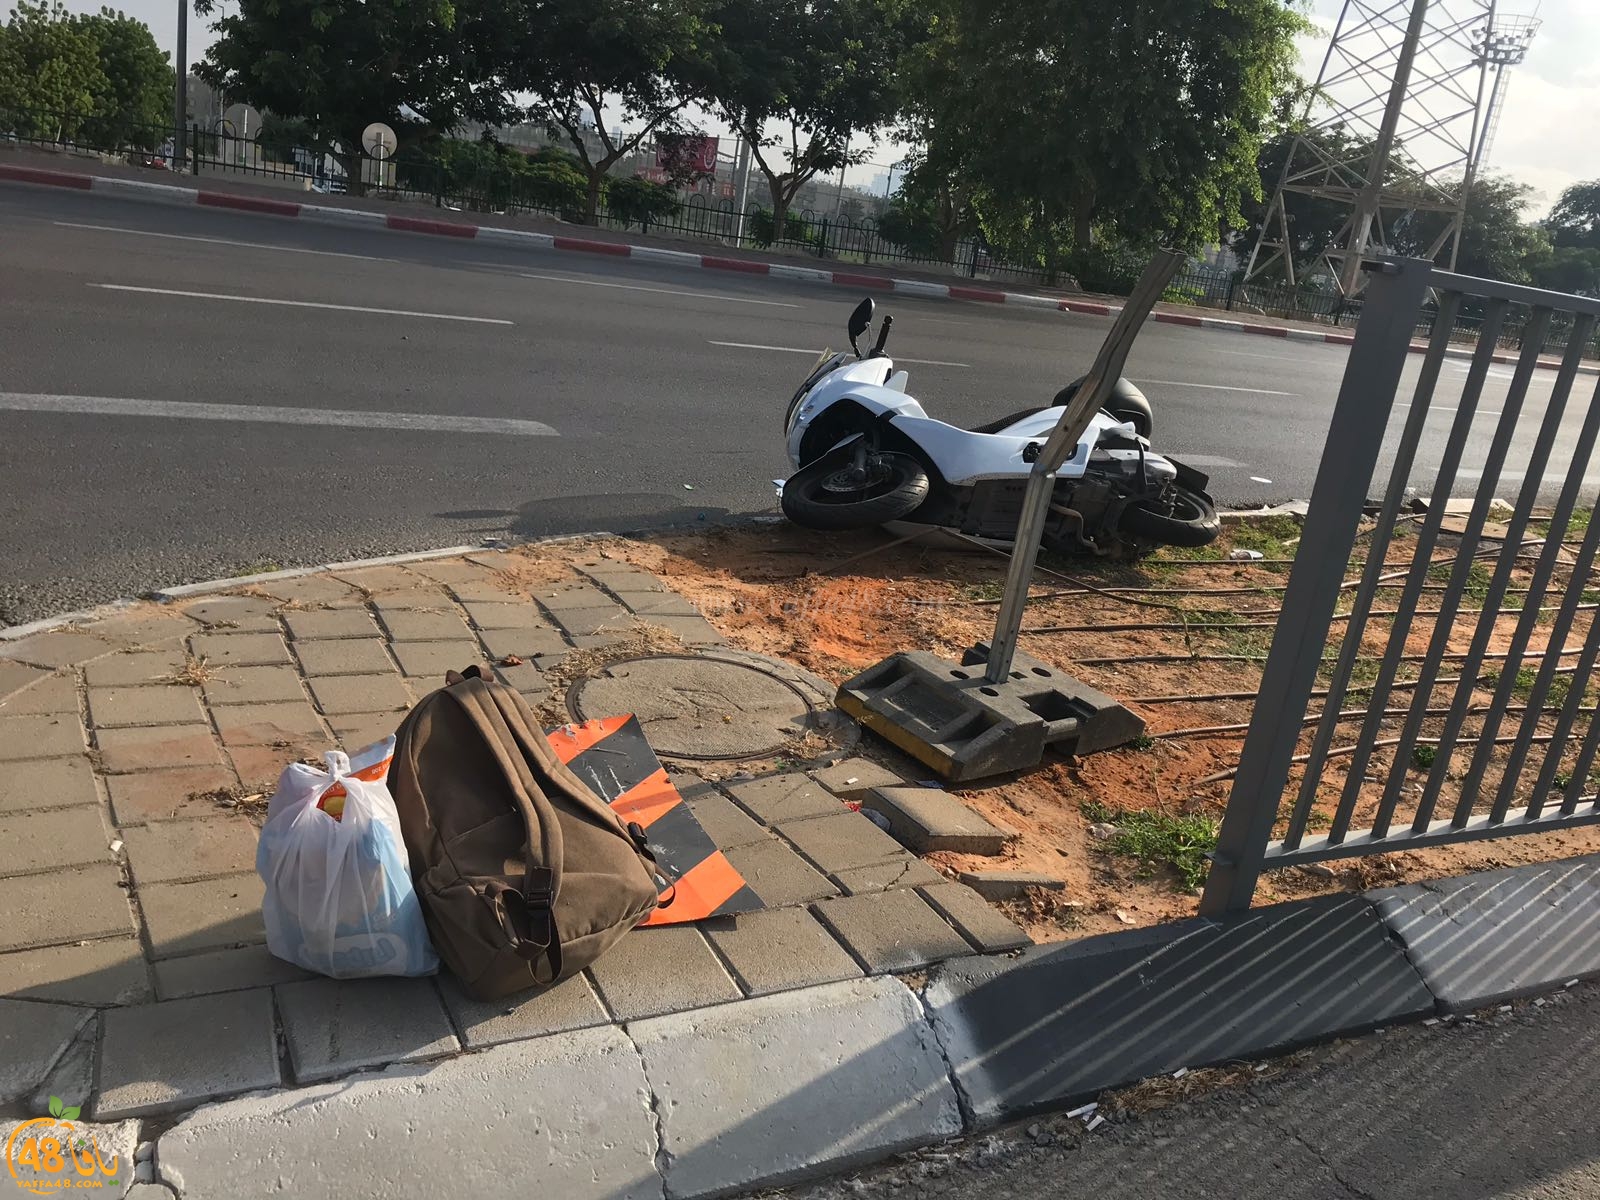  يافا: اصابة راكب دراجة نارية بحادث طرق قرب مستشفى فولفسون